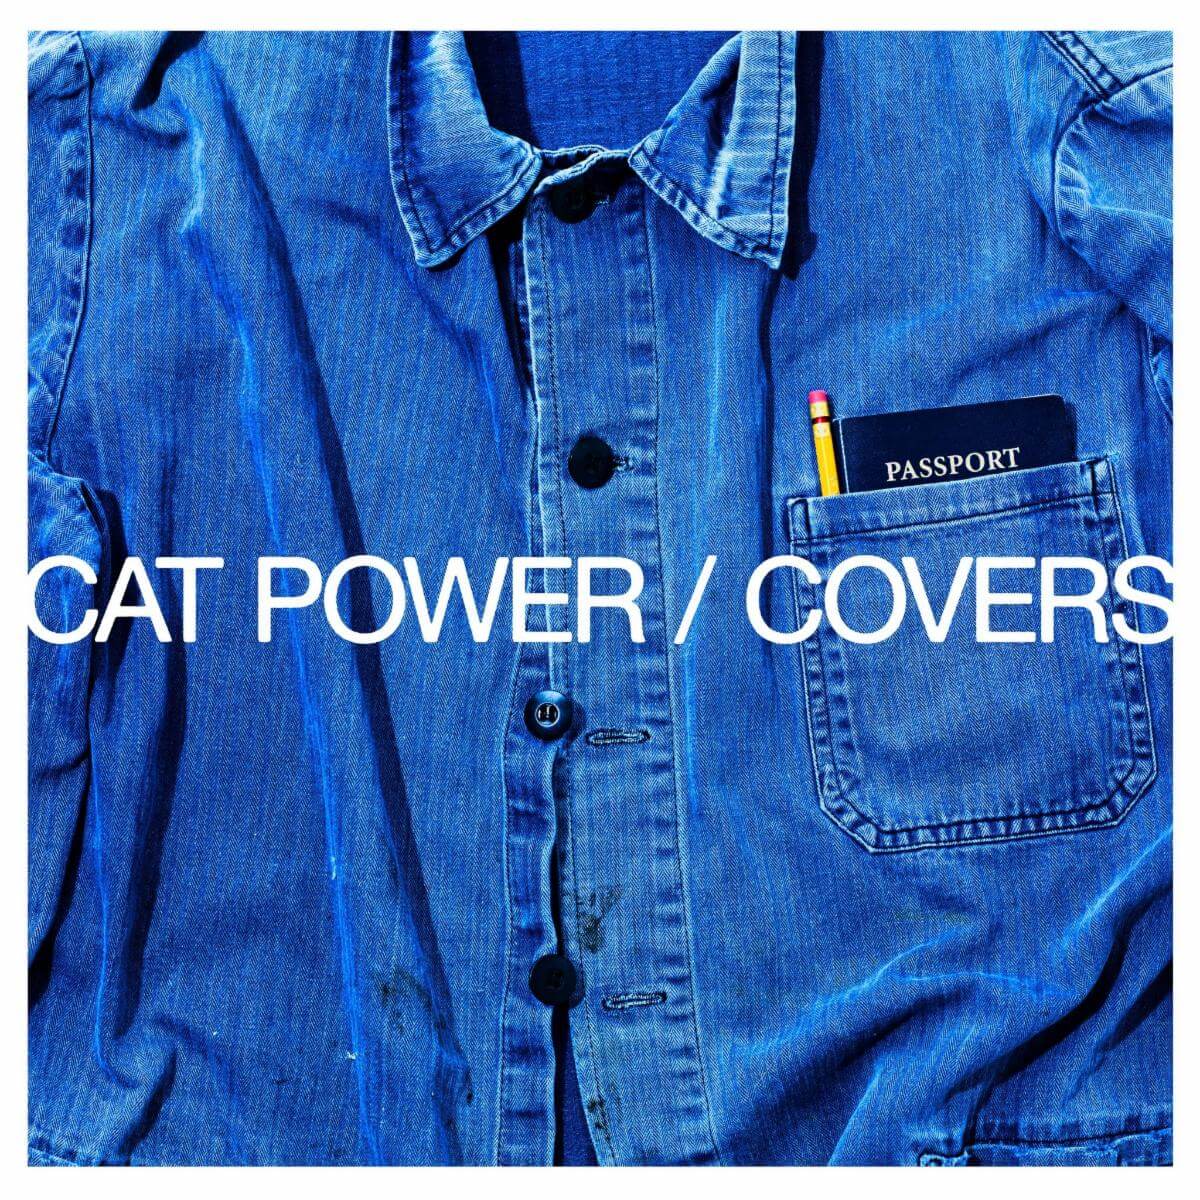 Cat Power covers Dead Man's Bones Pa Pa Power for Dead Man's Bones for covers album